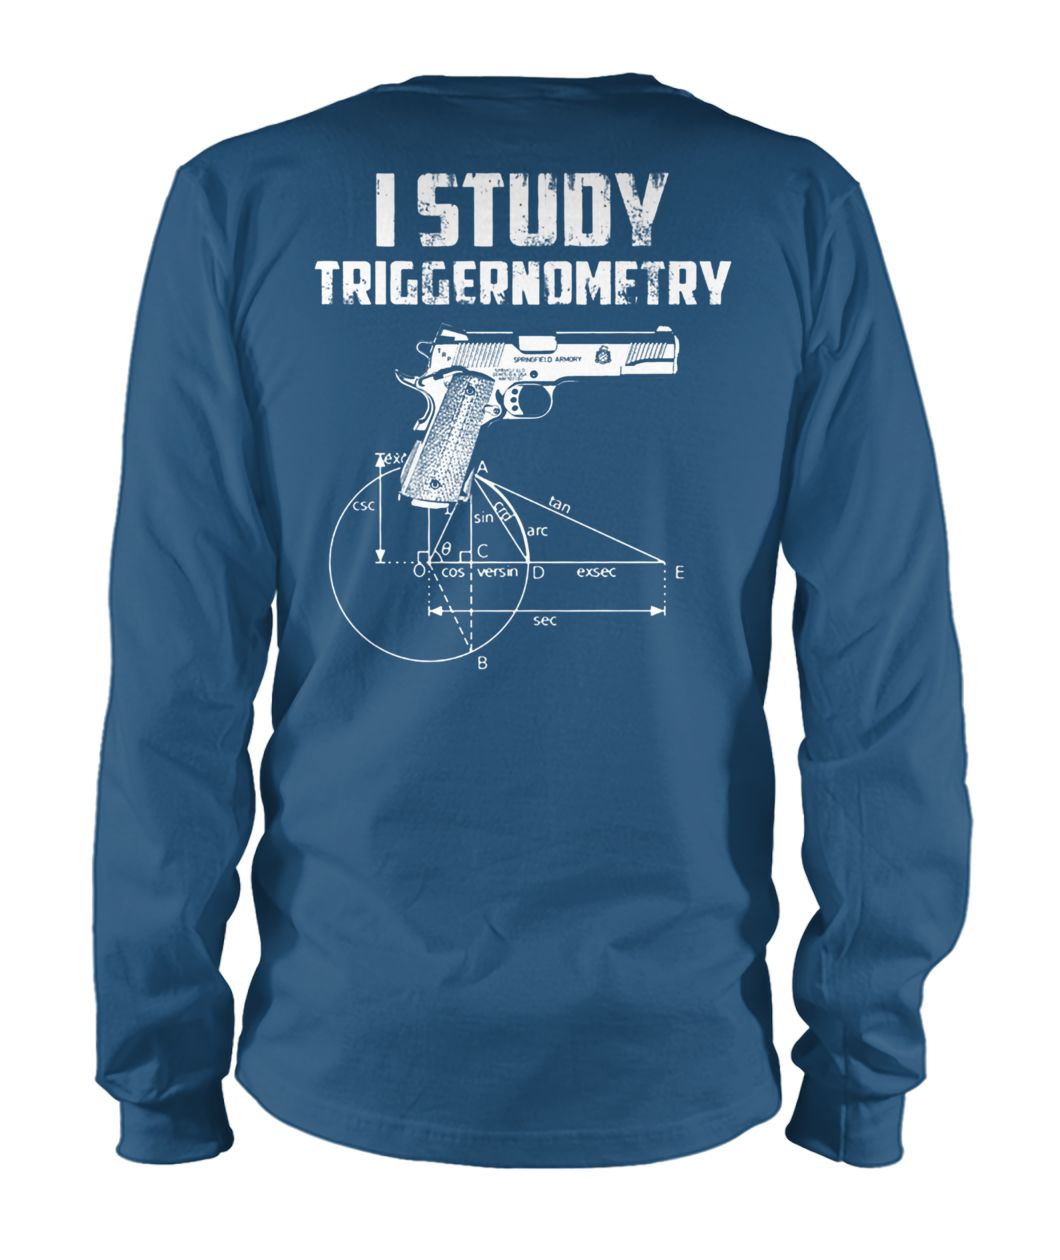 I study triggernometry unisex long sleeve